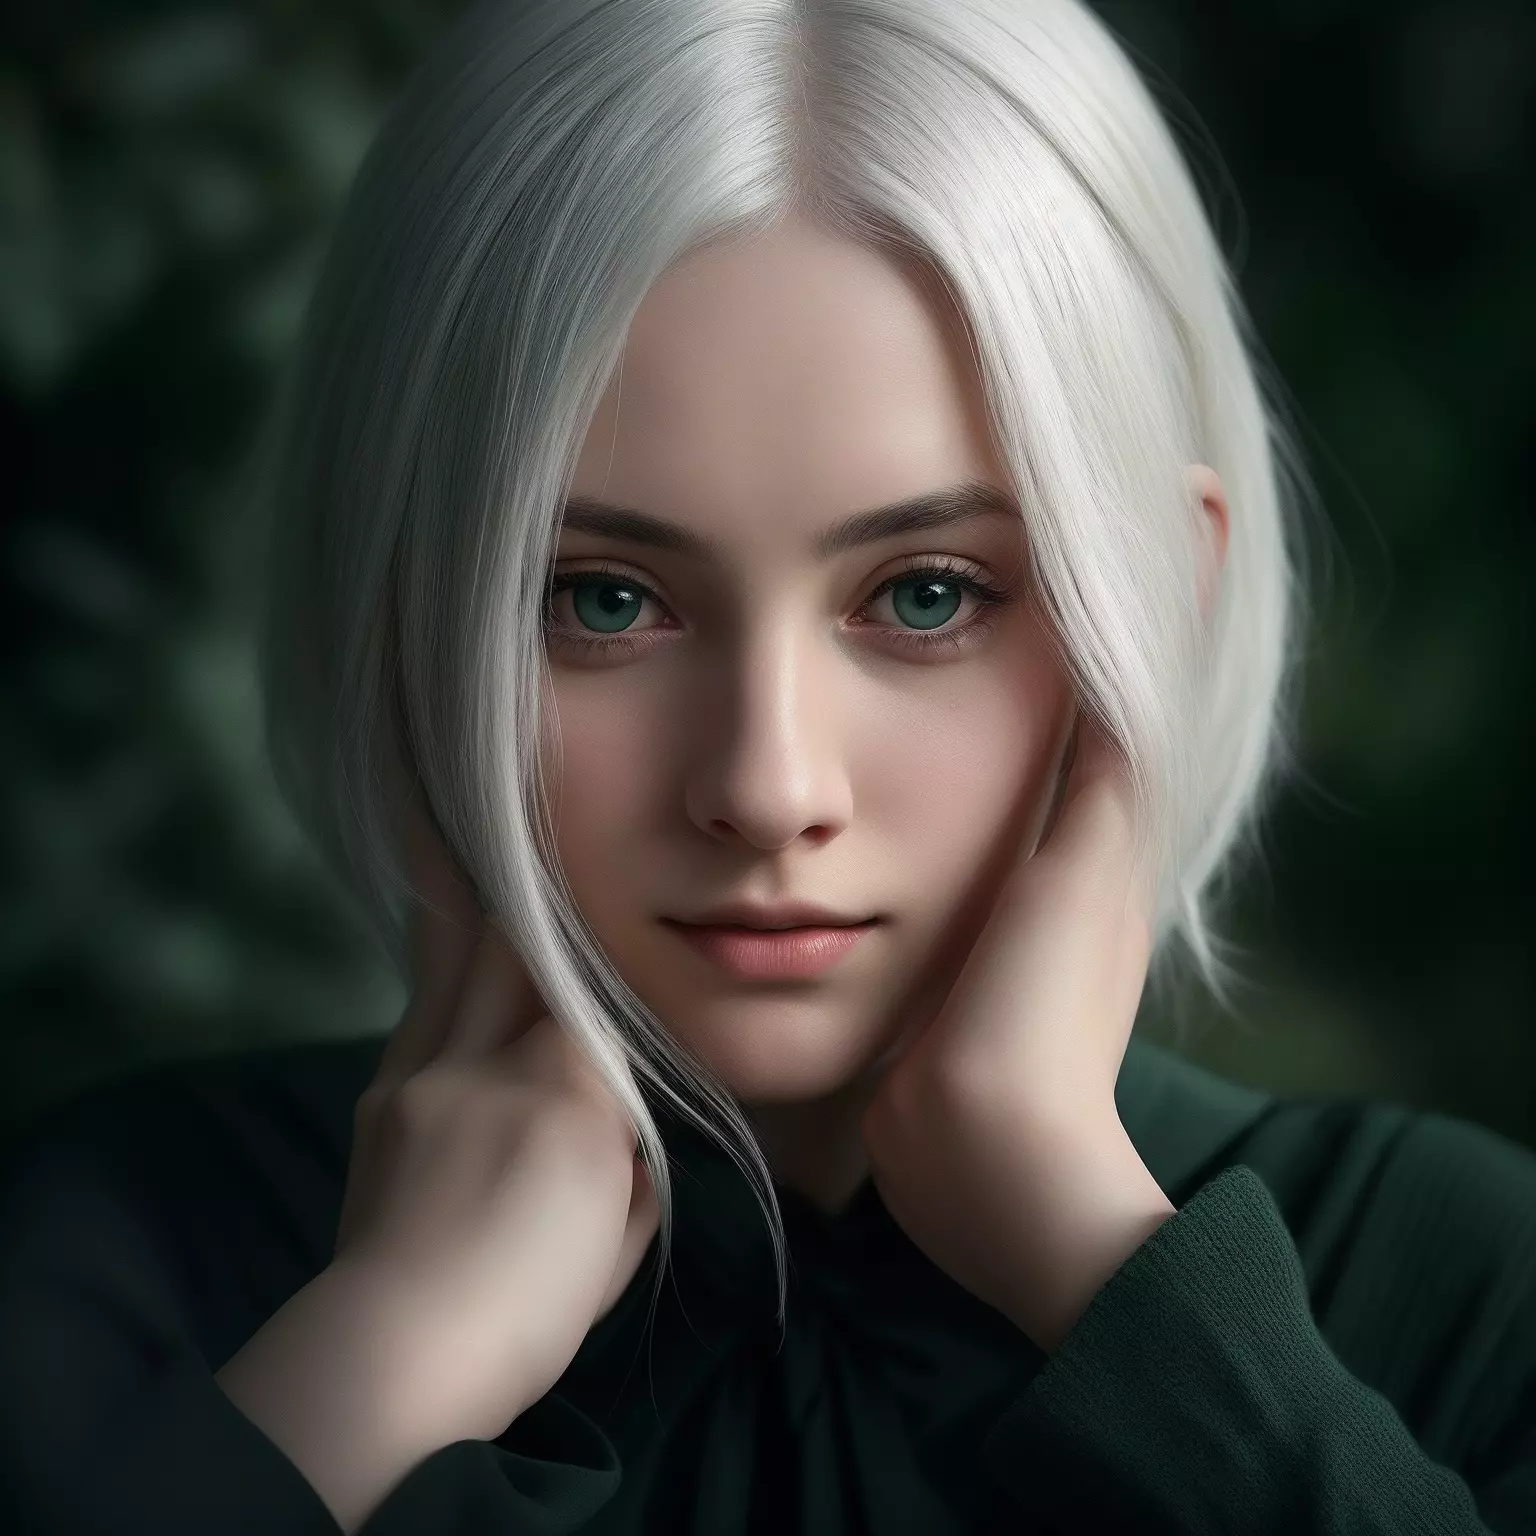 Mulher com cabelo branco e olhos verdes tocando o rosto